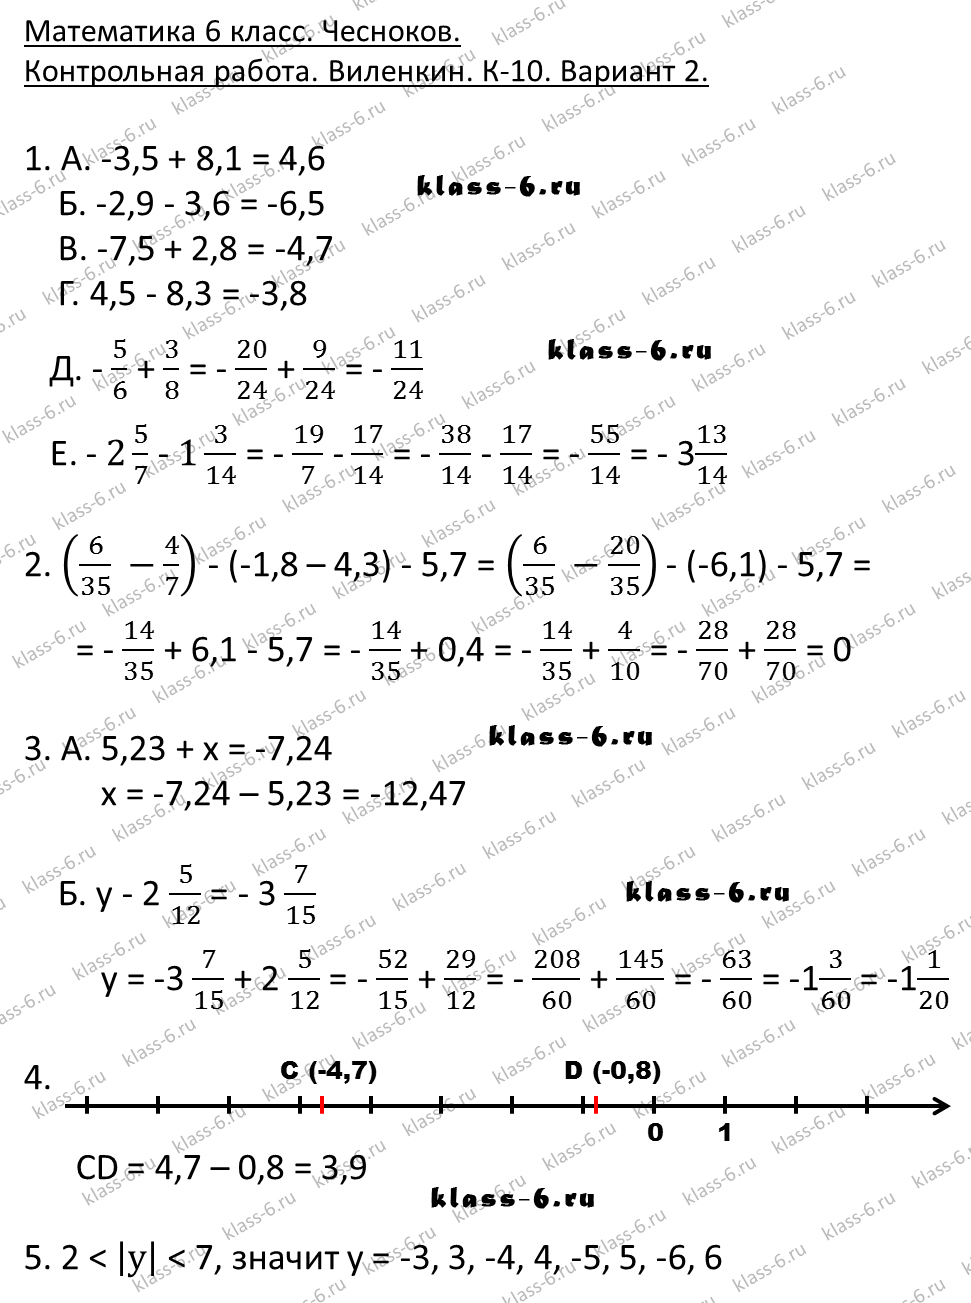 Ответы на контрольные работы по алгебре 6 класс вариант-1 к-5 виленкин п